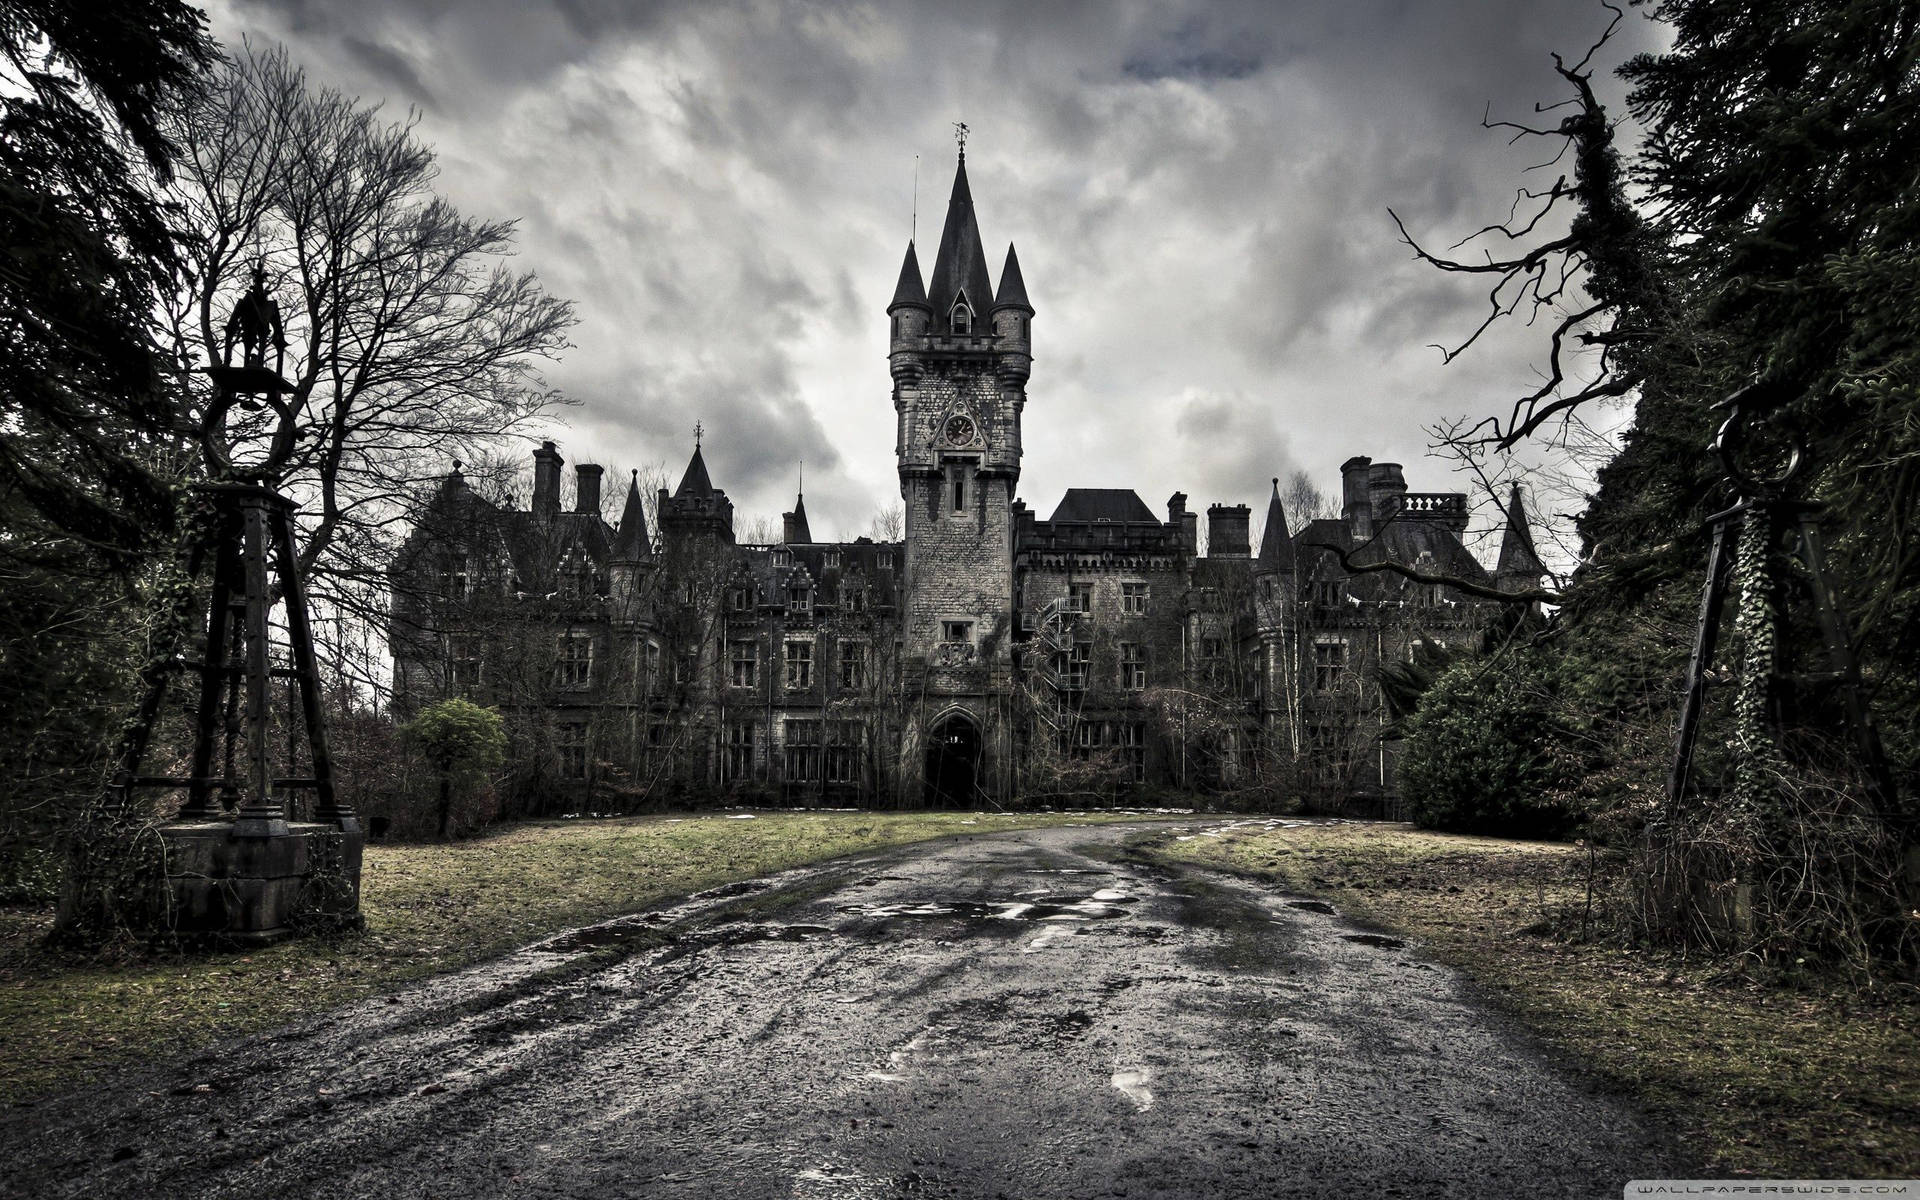 Spooky Haunted Castle Wallpaper